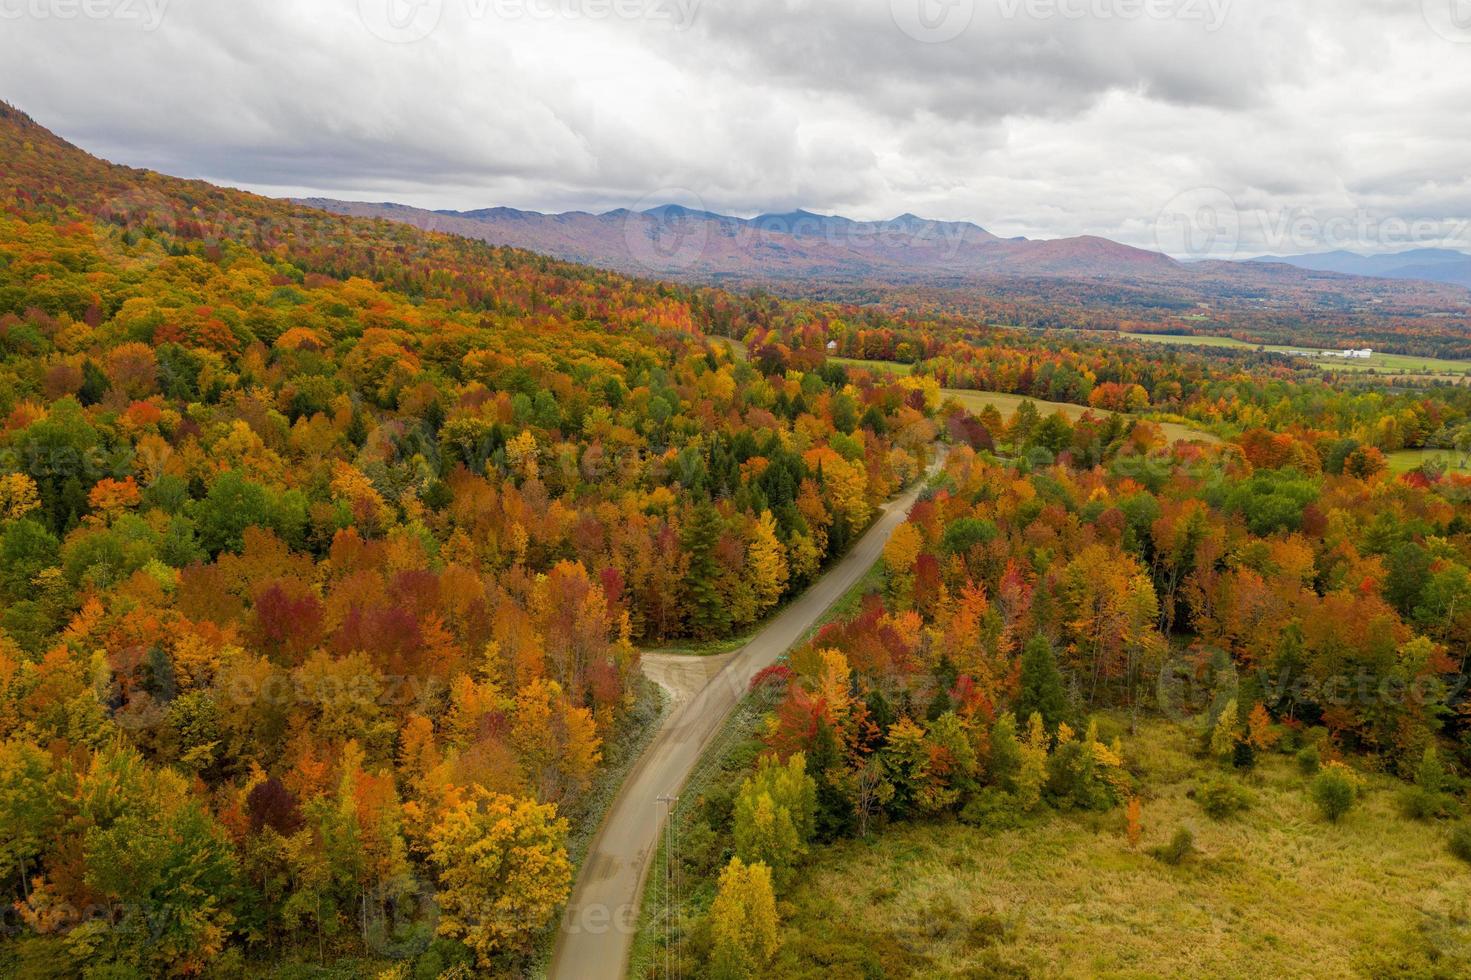 aereo Visualizza di Vermont e il circostante la zona durante picco fogliame nel autunno. foto